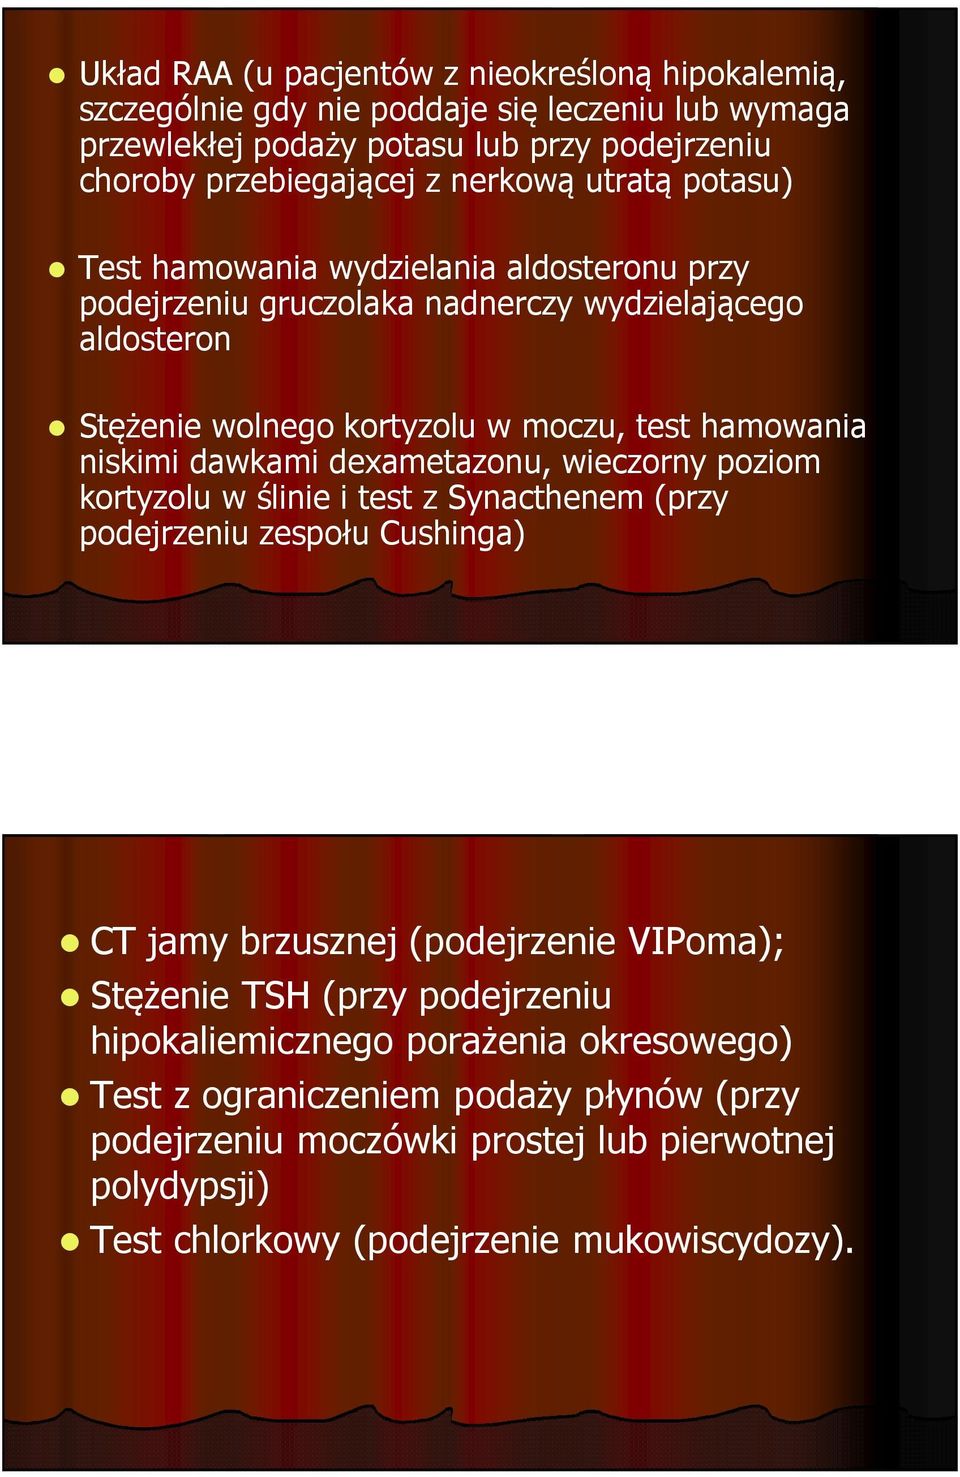 niskimi dawkami dexametazonu, wieczorny poziom kortyzolu w ślinie i test z Synacthenem(przy podejrzeniu zespołu Cushinga) CT jamy brzusznej (podejrzenie VIPoma); Stężenie TSH